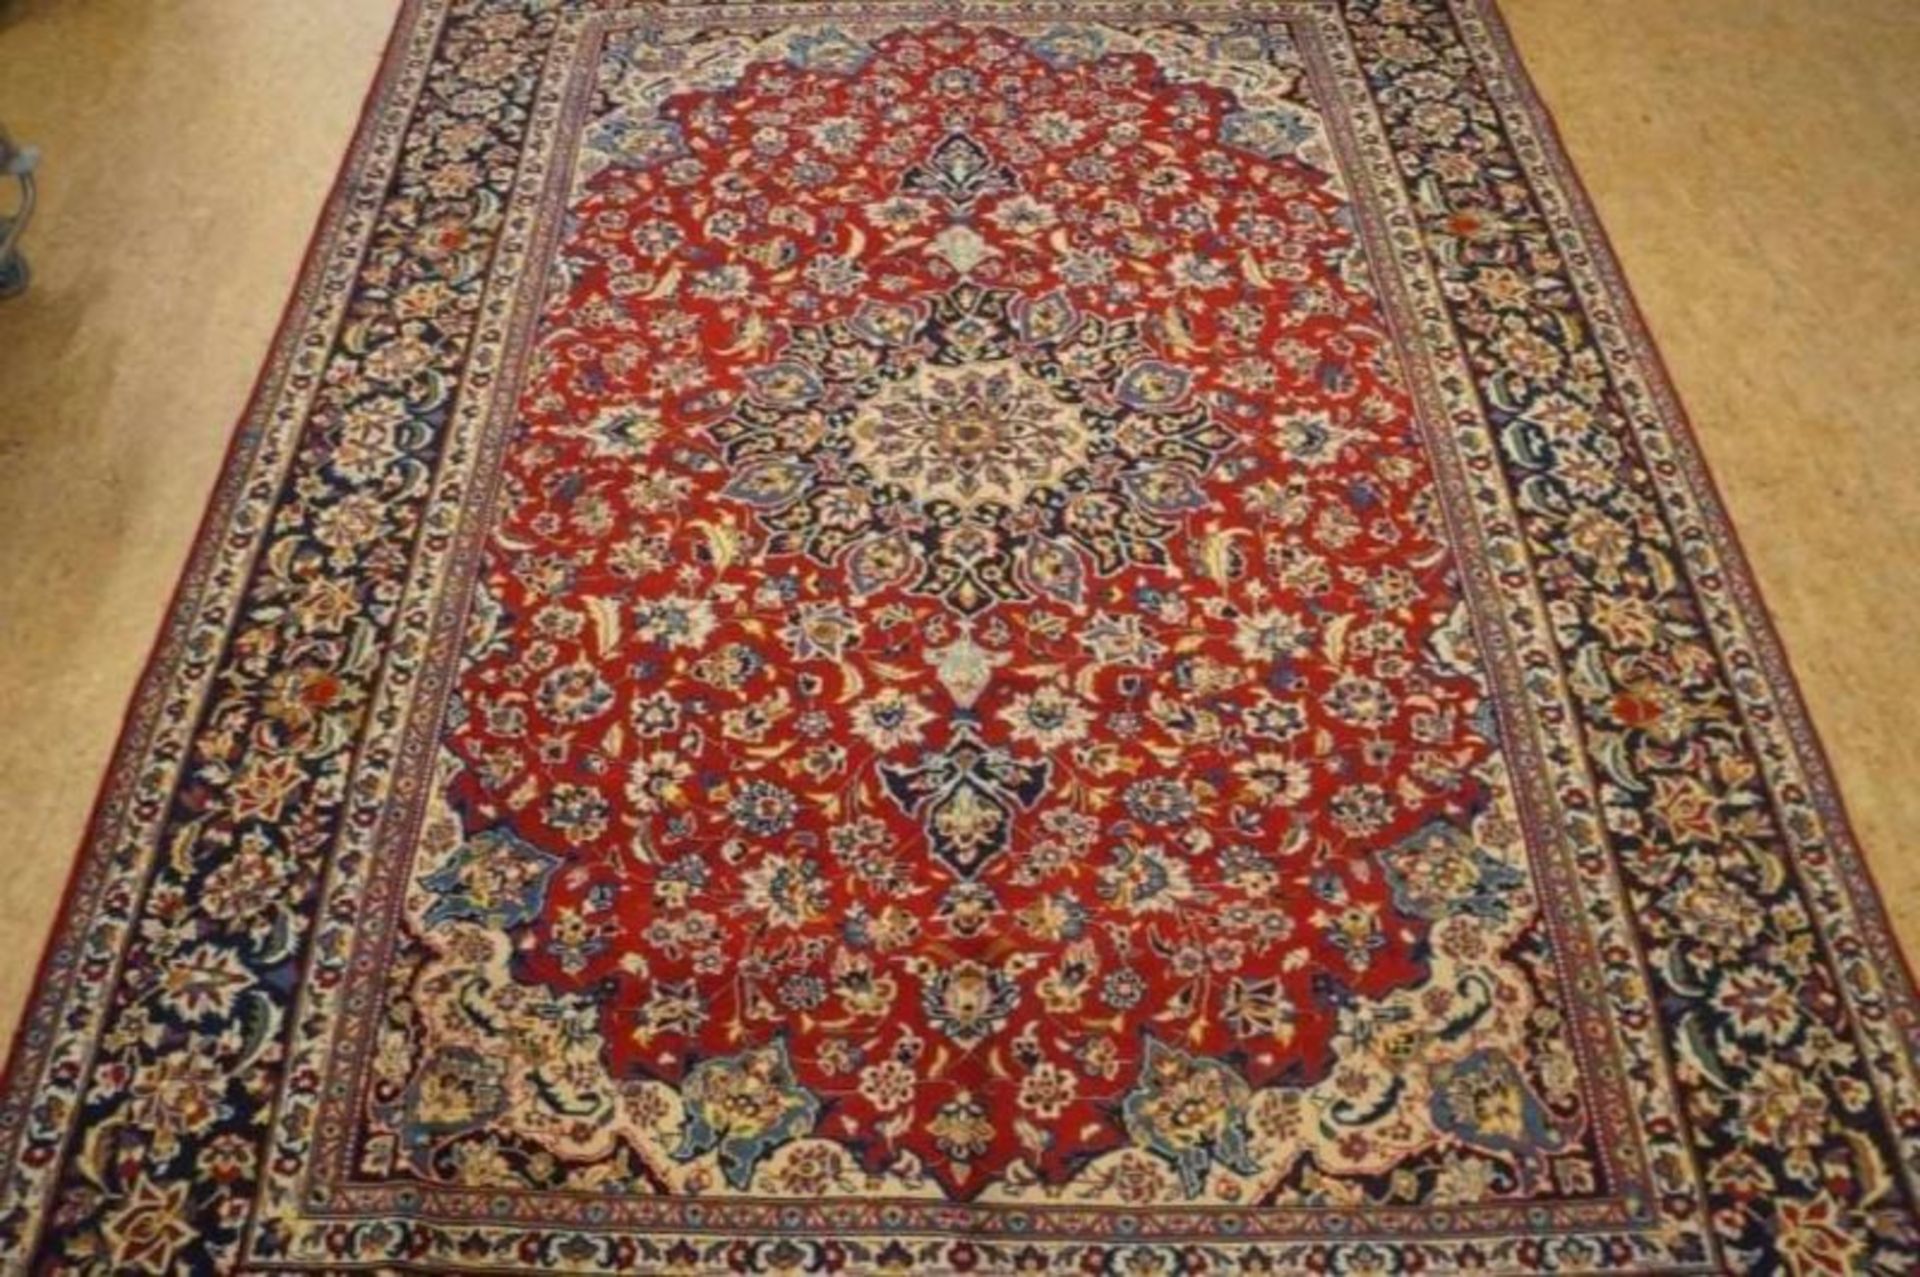 Tapijt, Najafabad, 395 x 300 cm.Carpet, Najafabad, 395 x 300 cm.